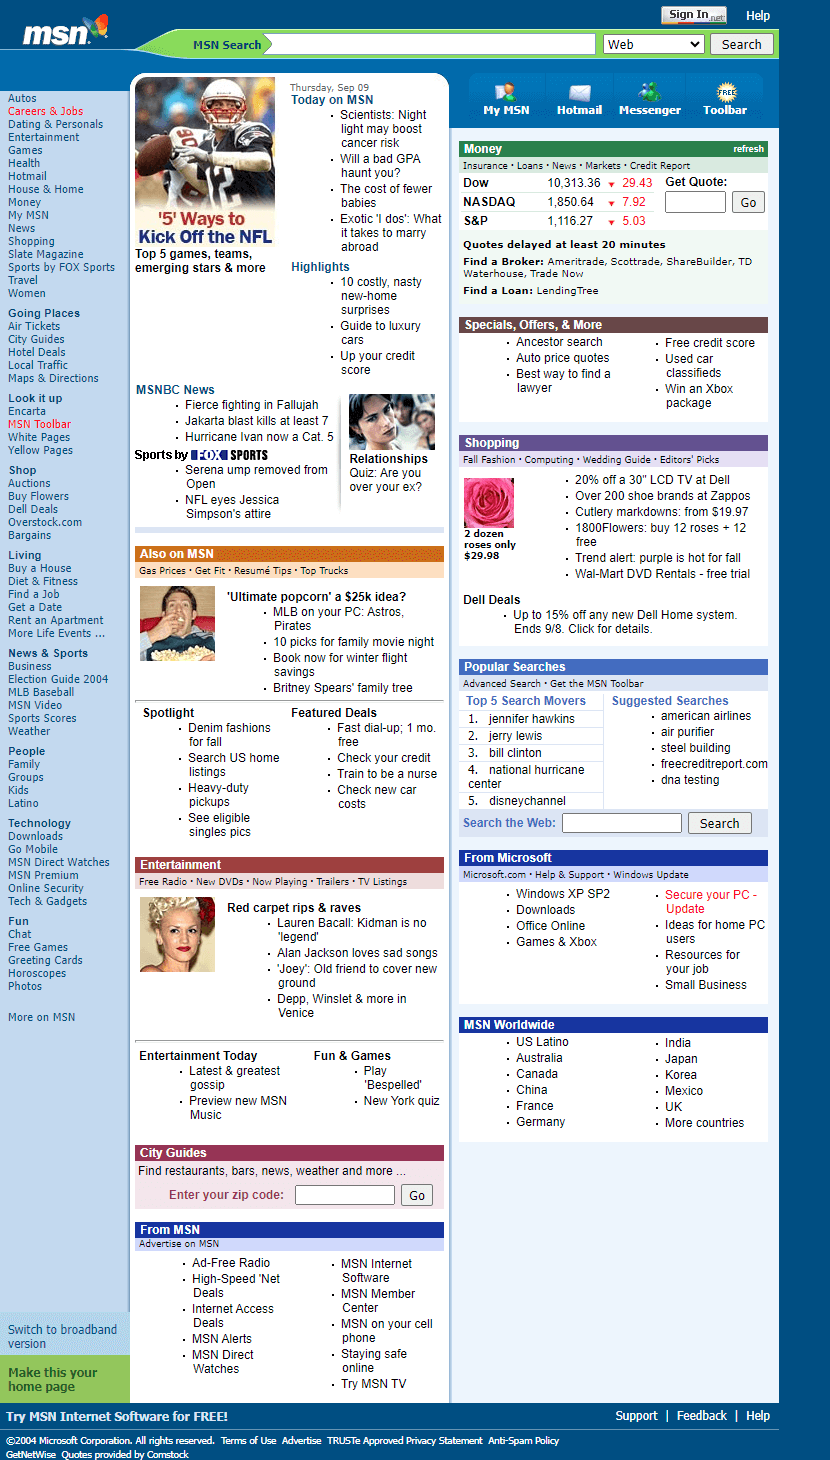 MSN in 2004